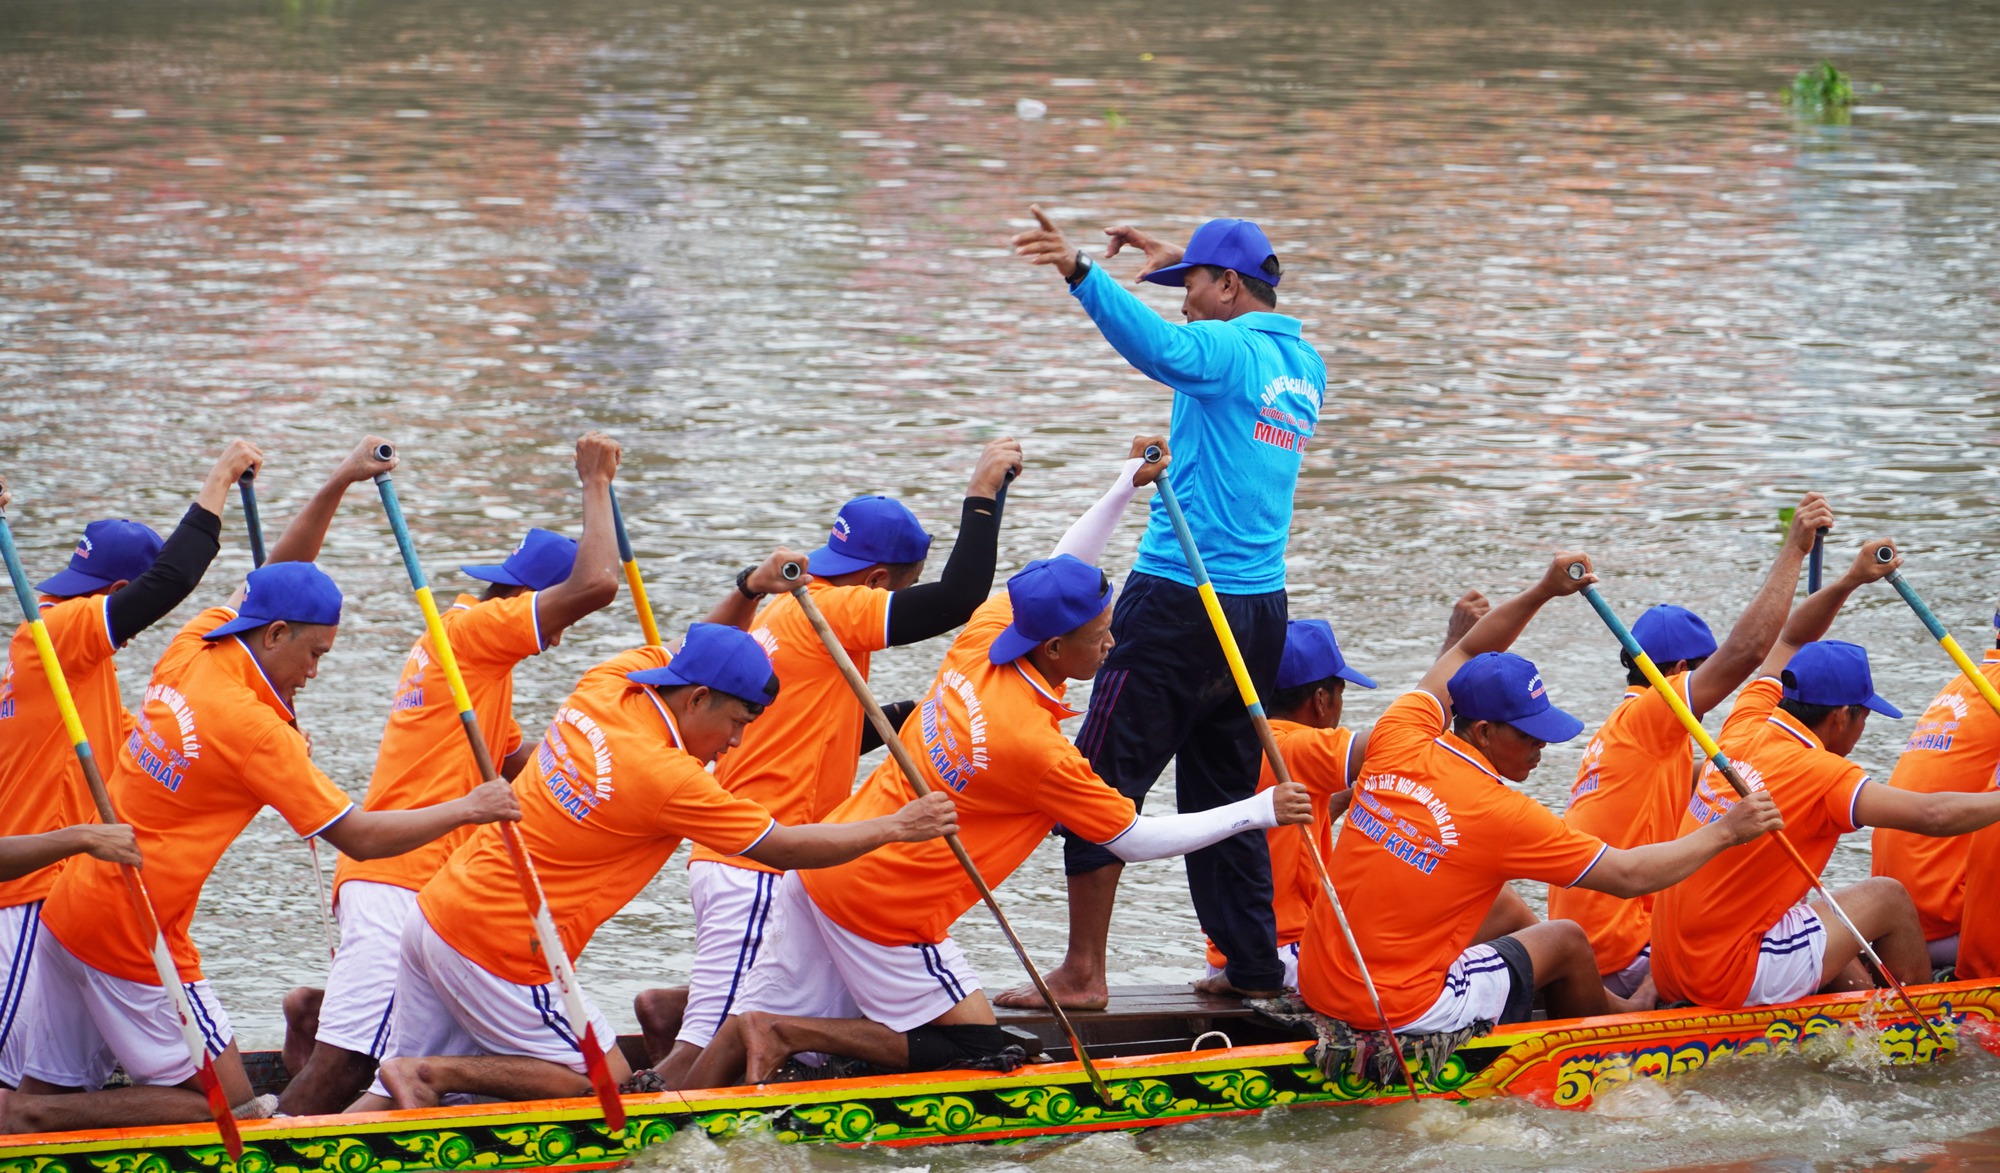 Hấp dẫn giải thể thao đặc biệt của đồng bào Khmer ở Sóc Trăng - Ảnh 14.